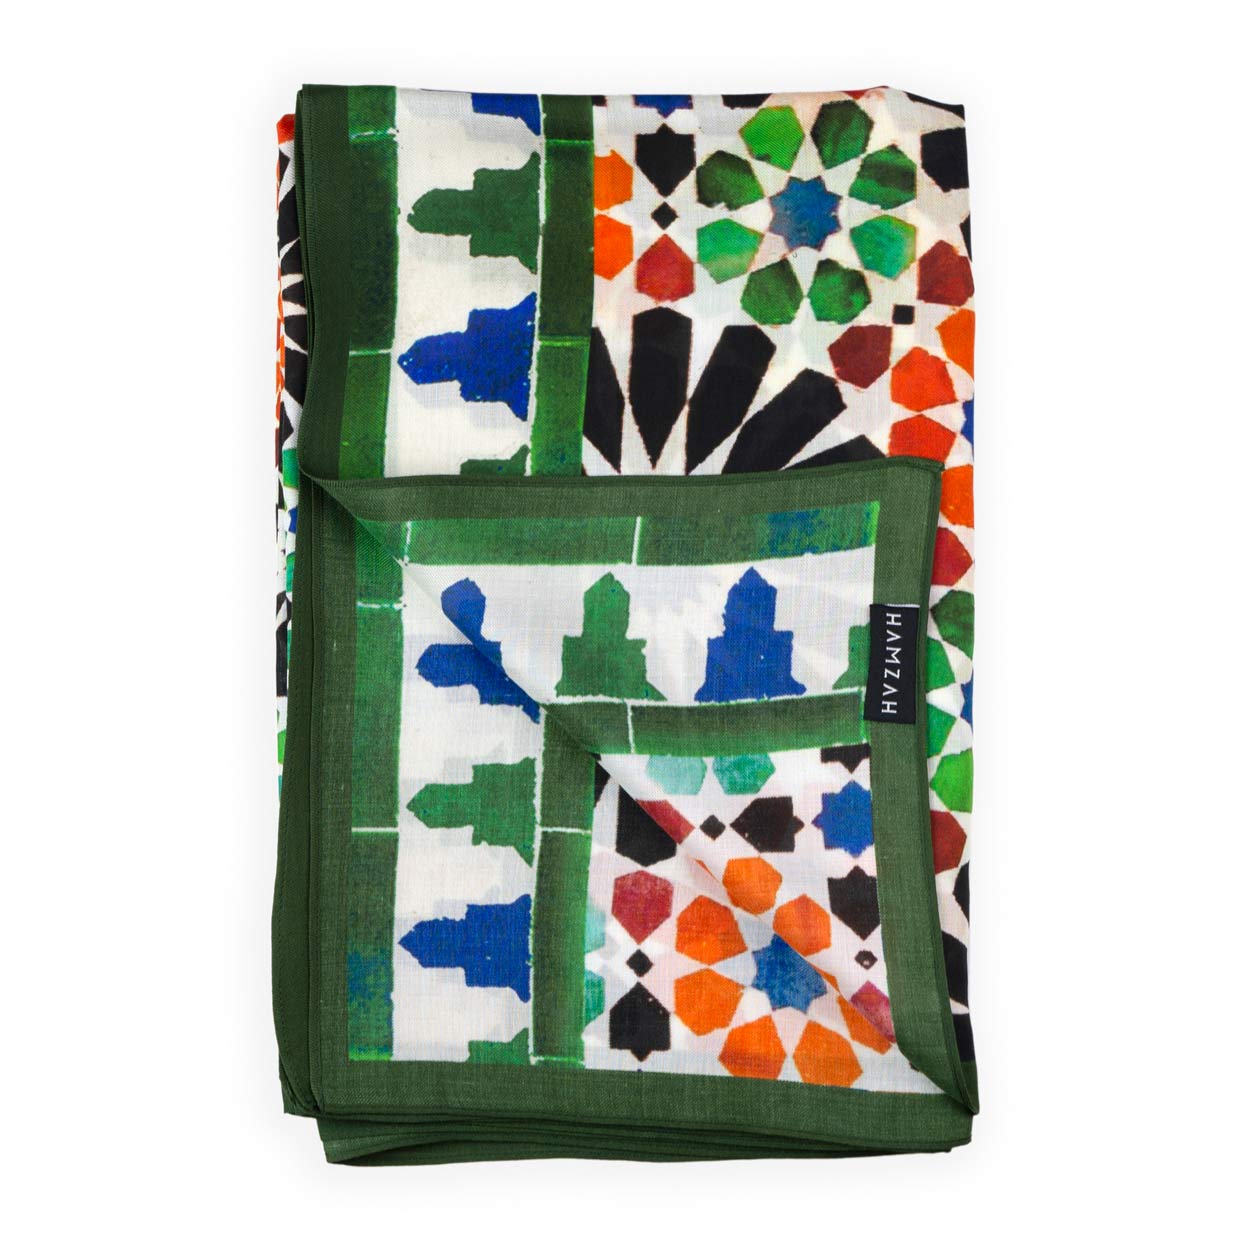 Foulard verde y naranja inspirado en los azulejos de marruecos